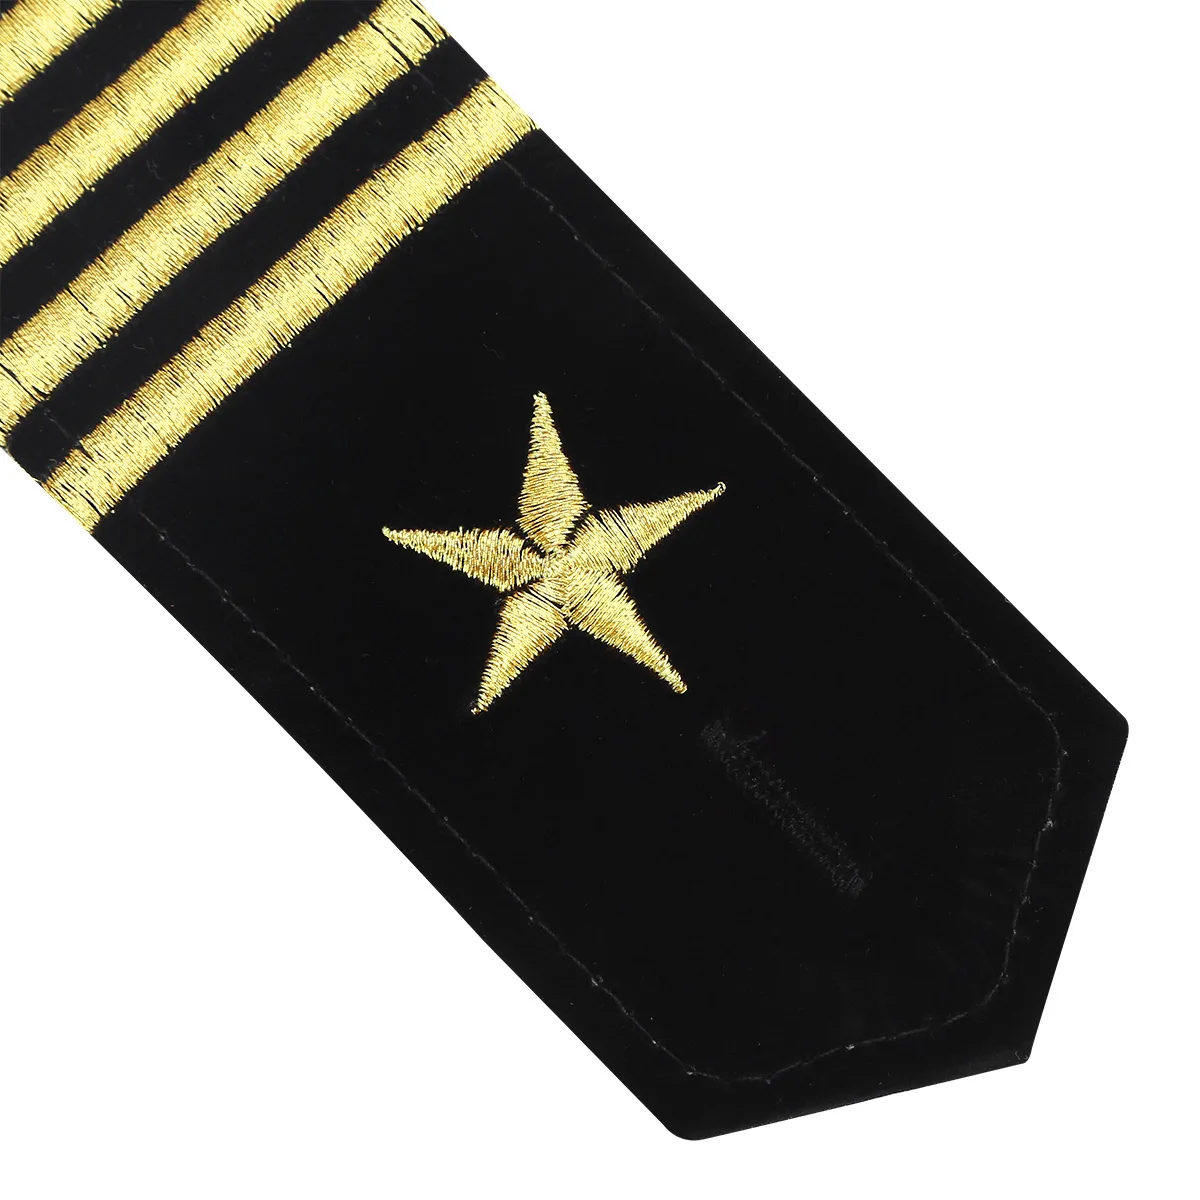 1 пара наплечных щитов значки Профессиональный пилот моряк Униформа эполеты Золотая вышитая звезда эполеты DIY Одежда эполеты